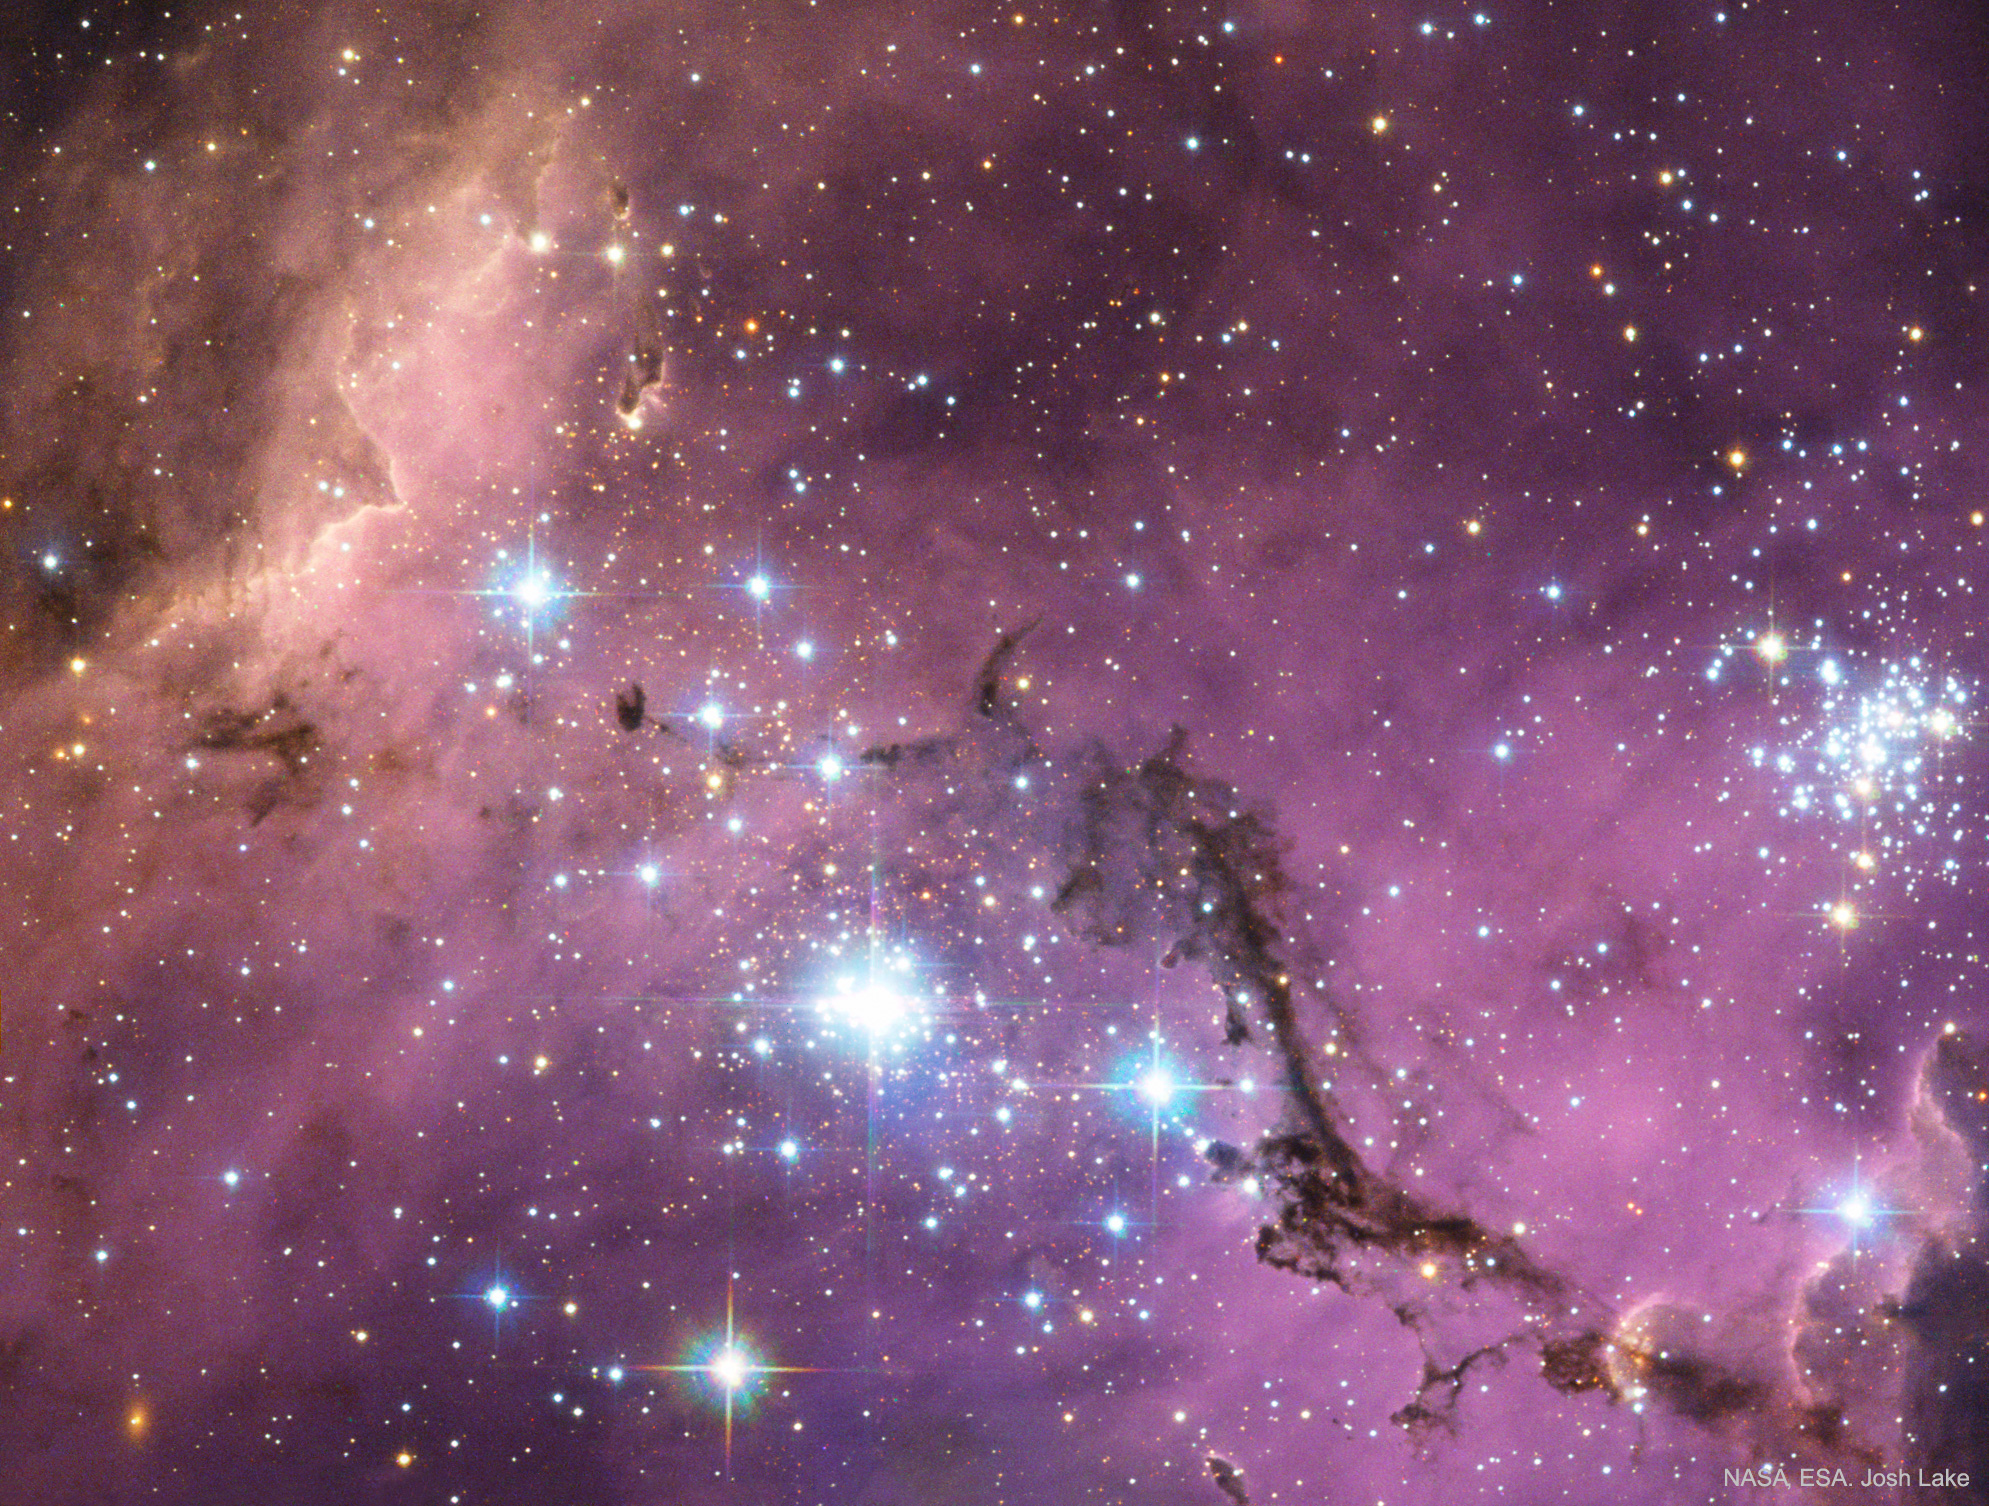 N11: zvezdnye oblaka v Bol'shom Magellanovom Oblake